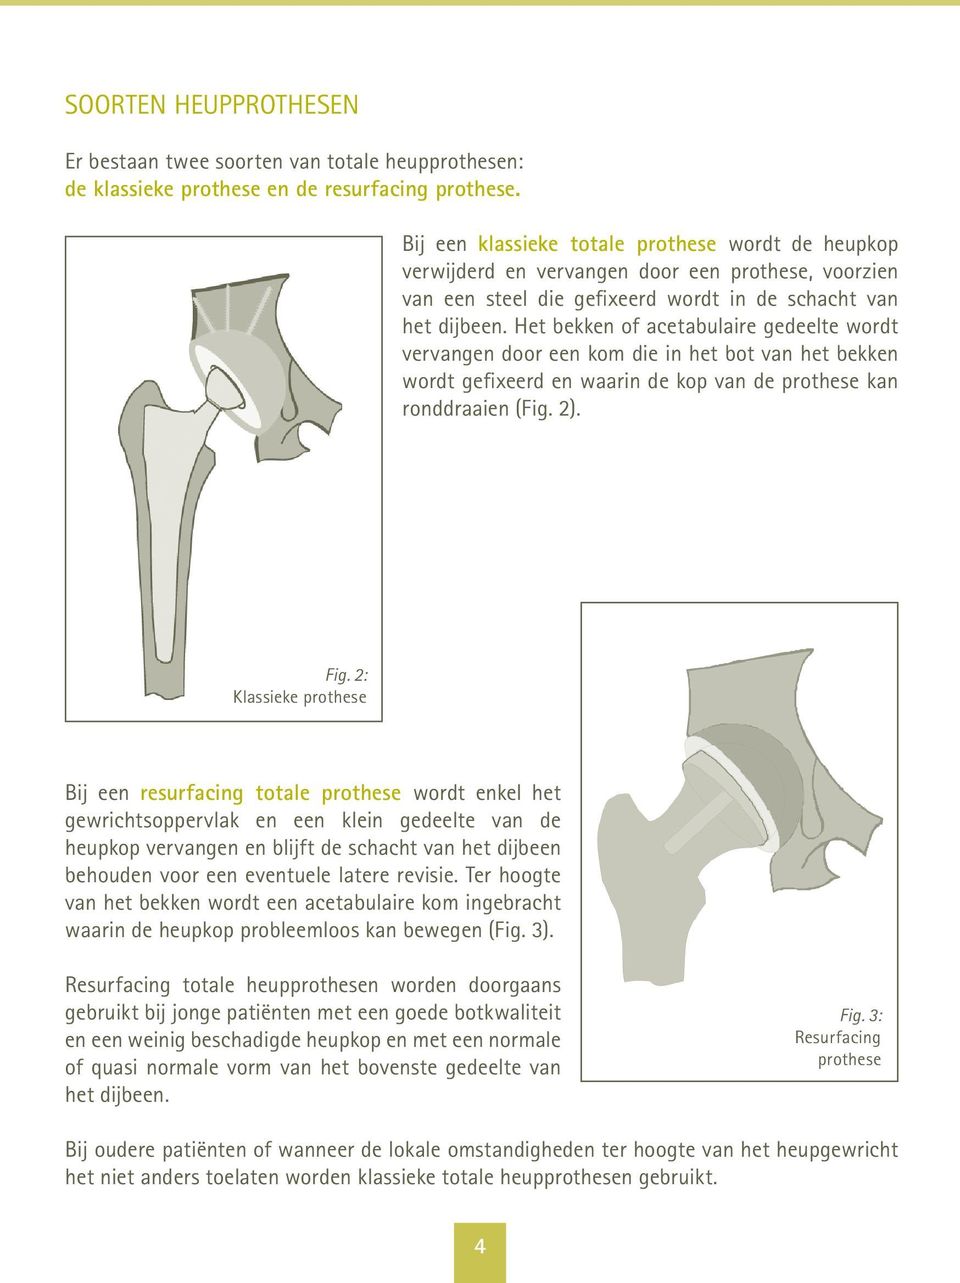 Het bekken of acetabulaire gedeelte wordt vervangen door een kom die in het bot van het bekken wordt gefixeerd en waarin de kop van de prothese kan ronddraaien (Fig. 2). Fig.